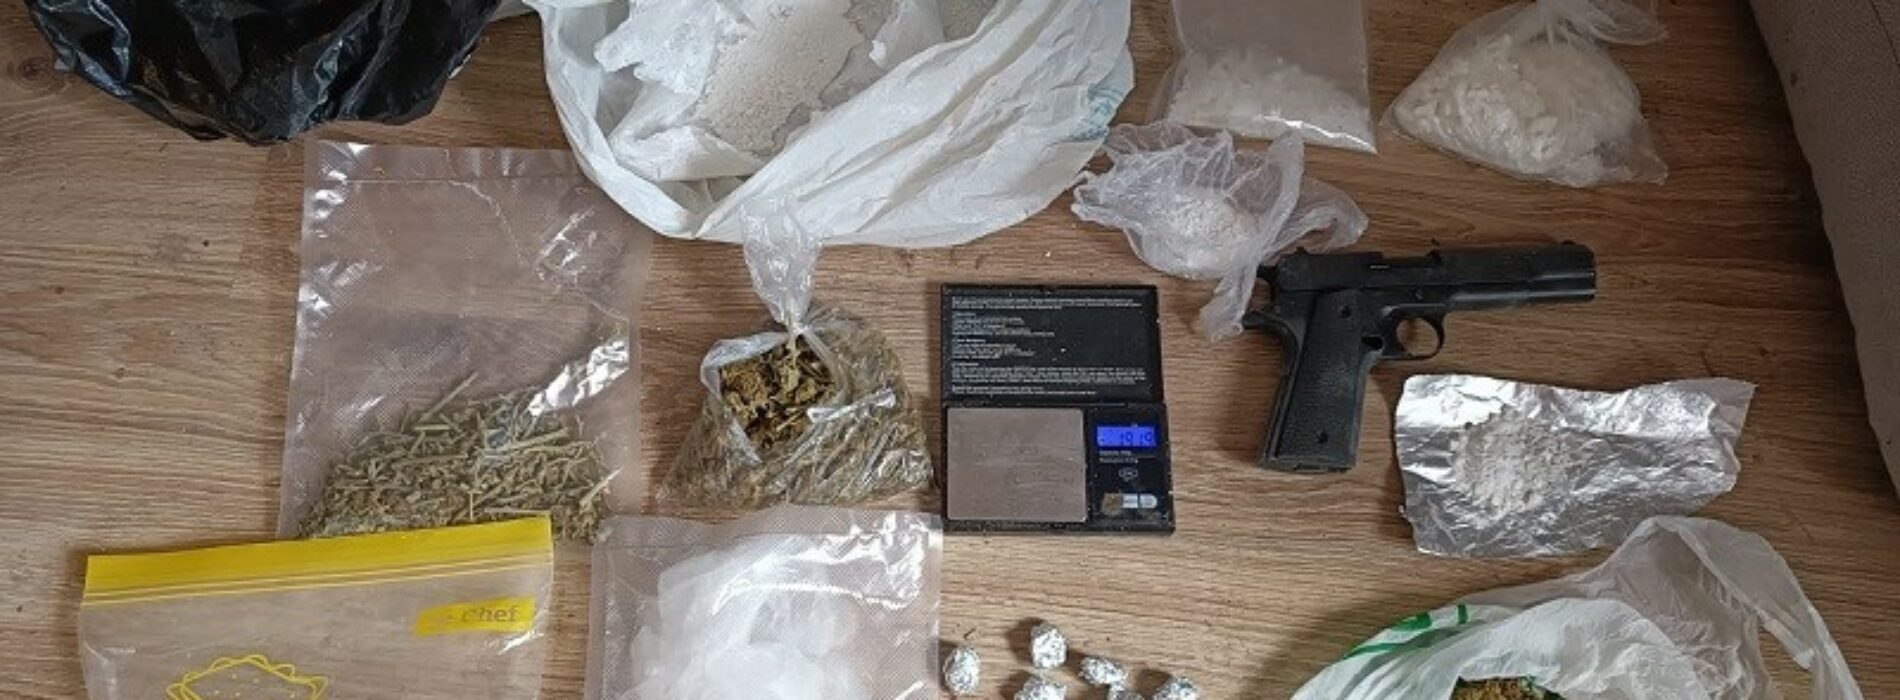 Legniccy policjanci przechwycili ponad 8,5 tys. porcji handlowych narkotyków- podejrzany w tej sprawie mężczyzna został tymczasowo aresztowany